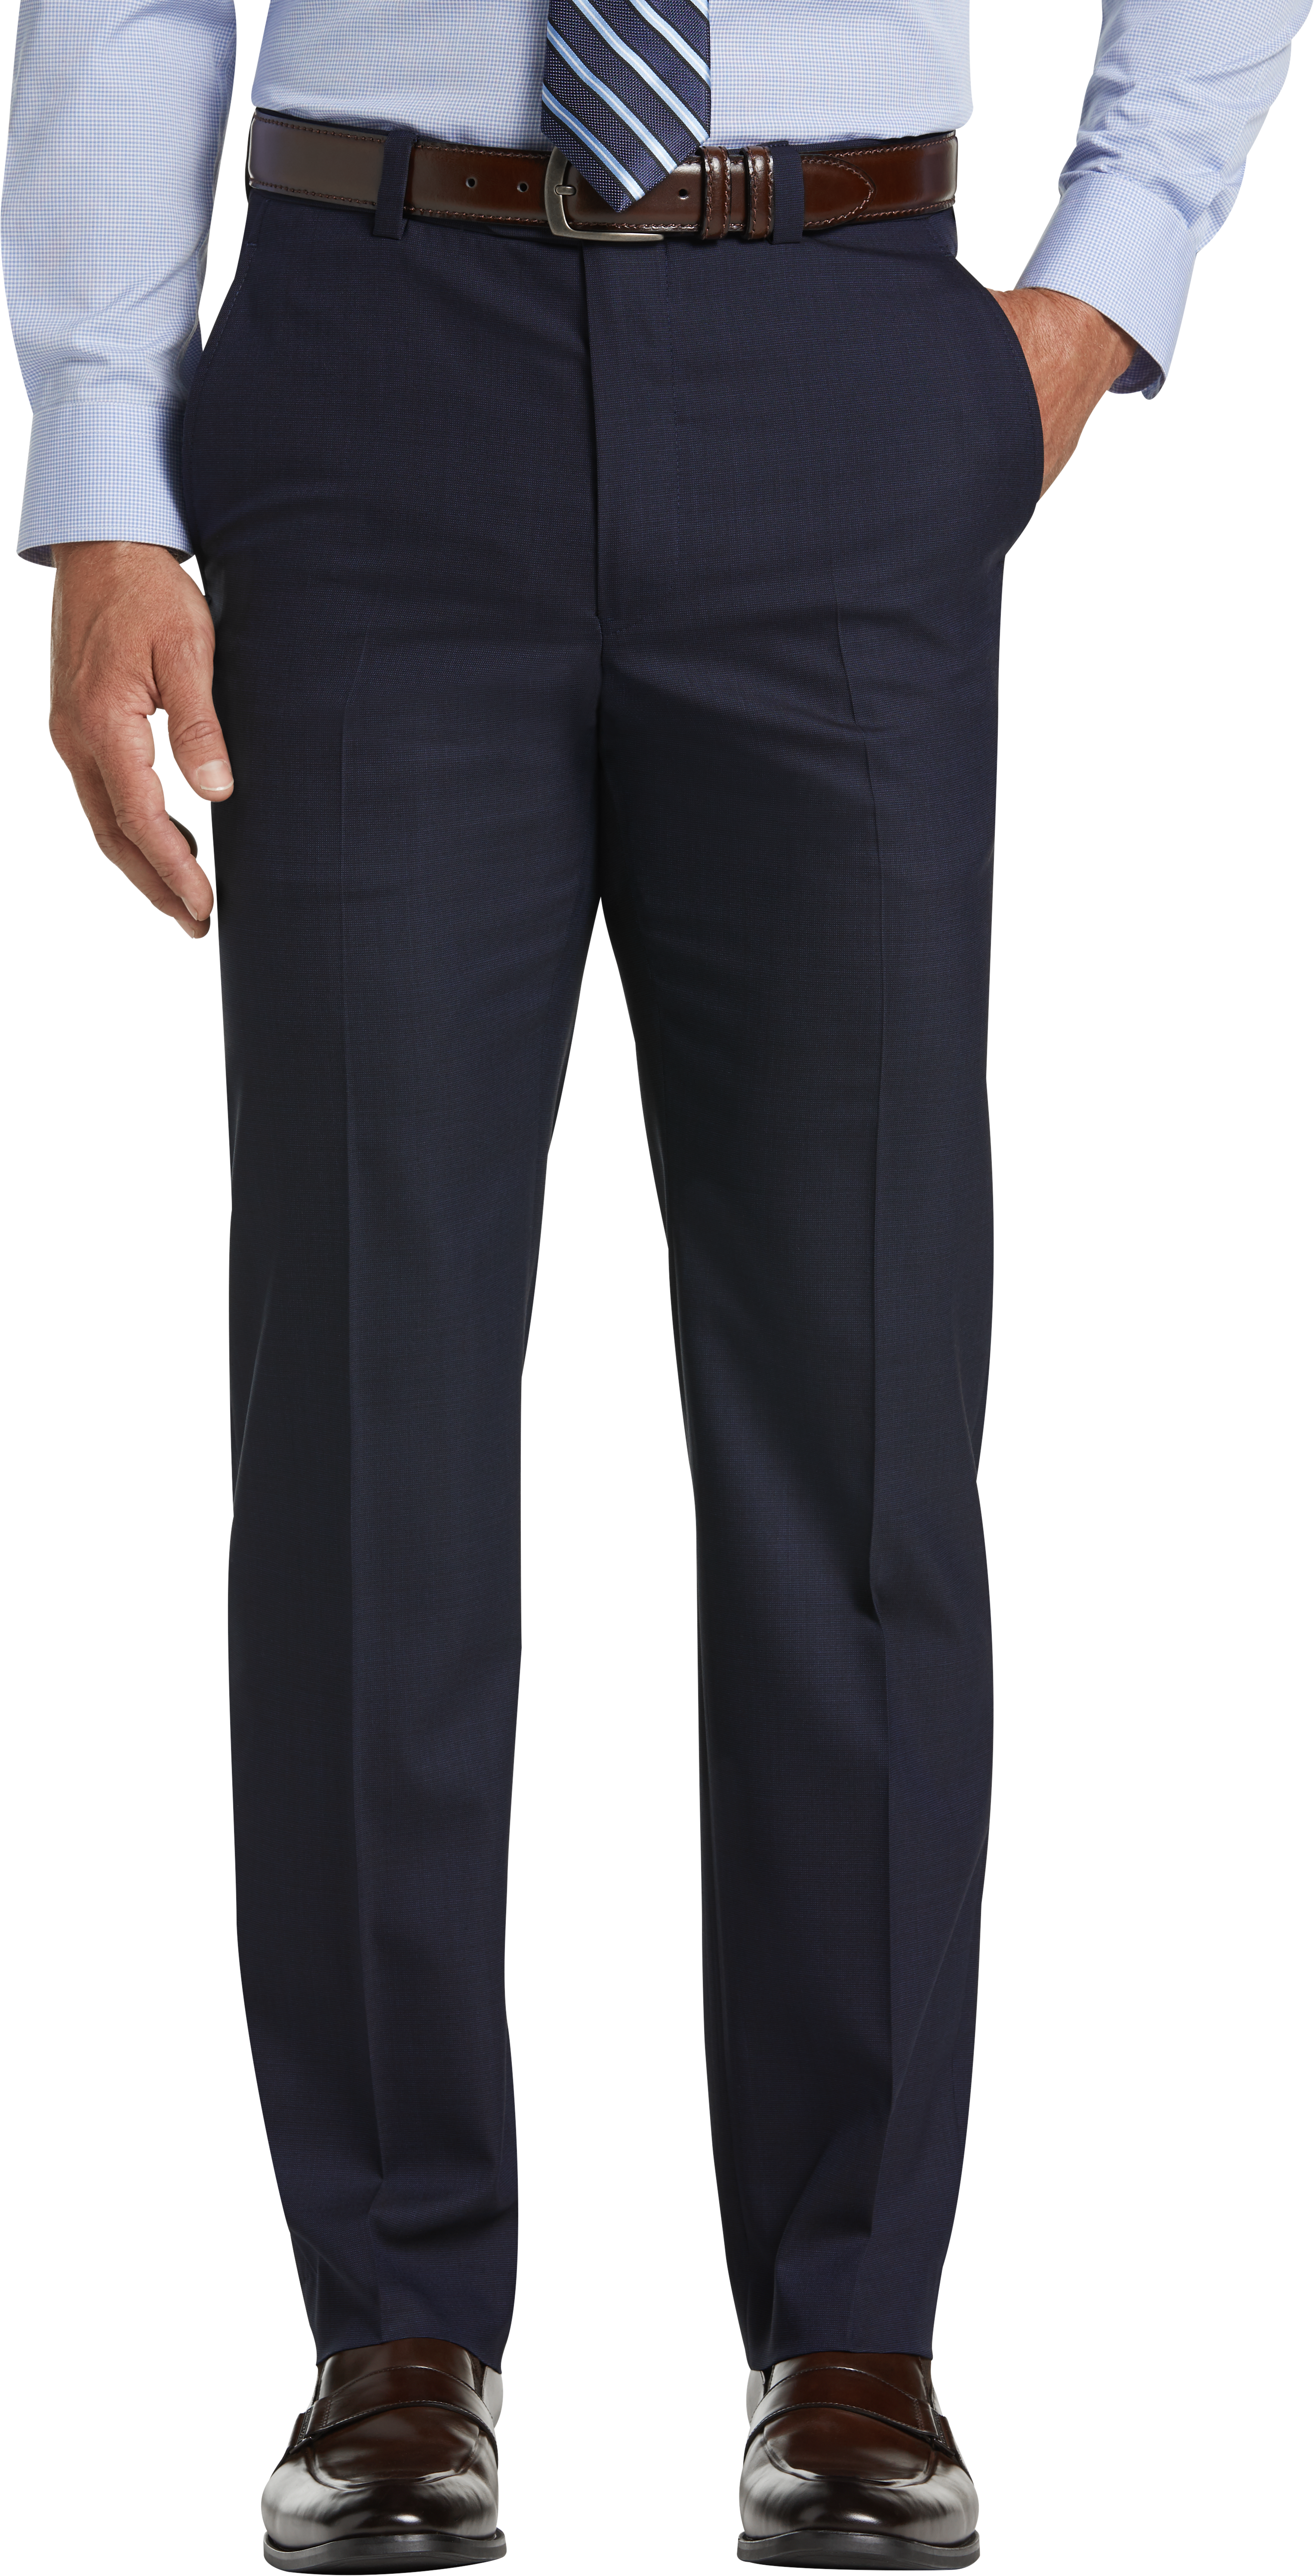 Joseph Abboud Modern Fit Blue Tic Suit Separates Dress Pants - Men's ...